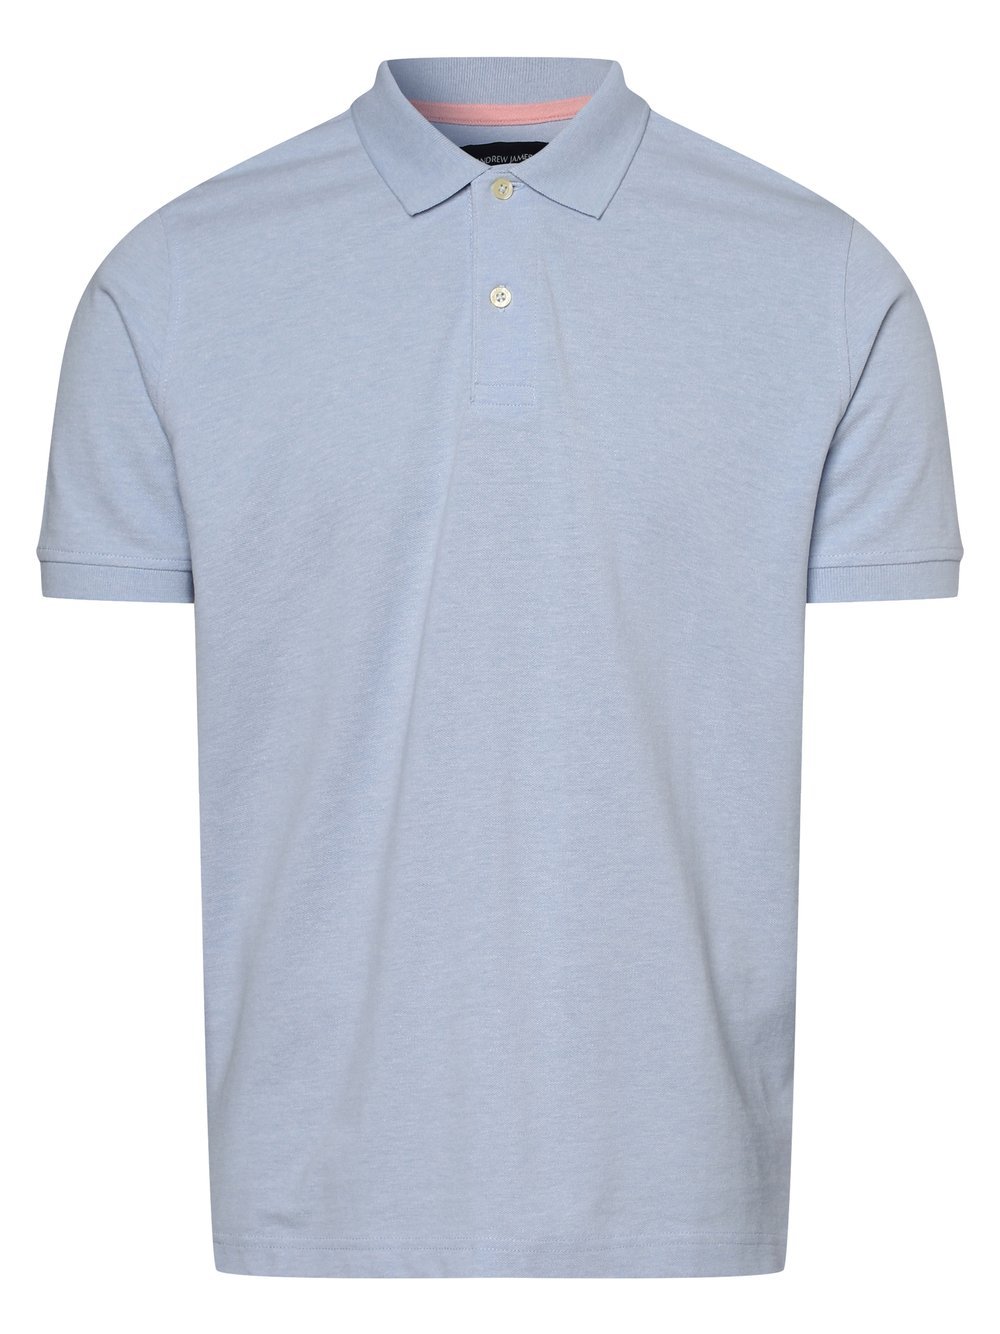 Andrew James - Męska koszulka polo, niebieski Andrew James